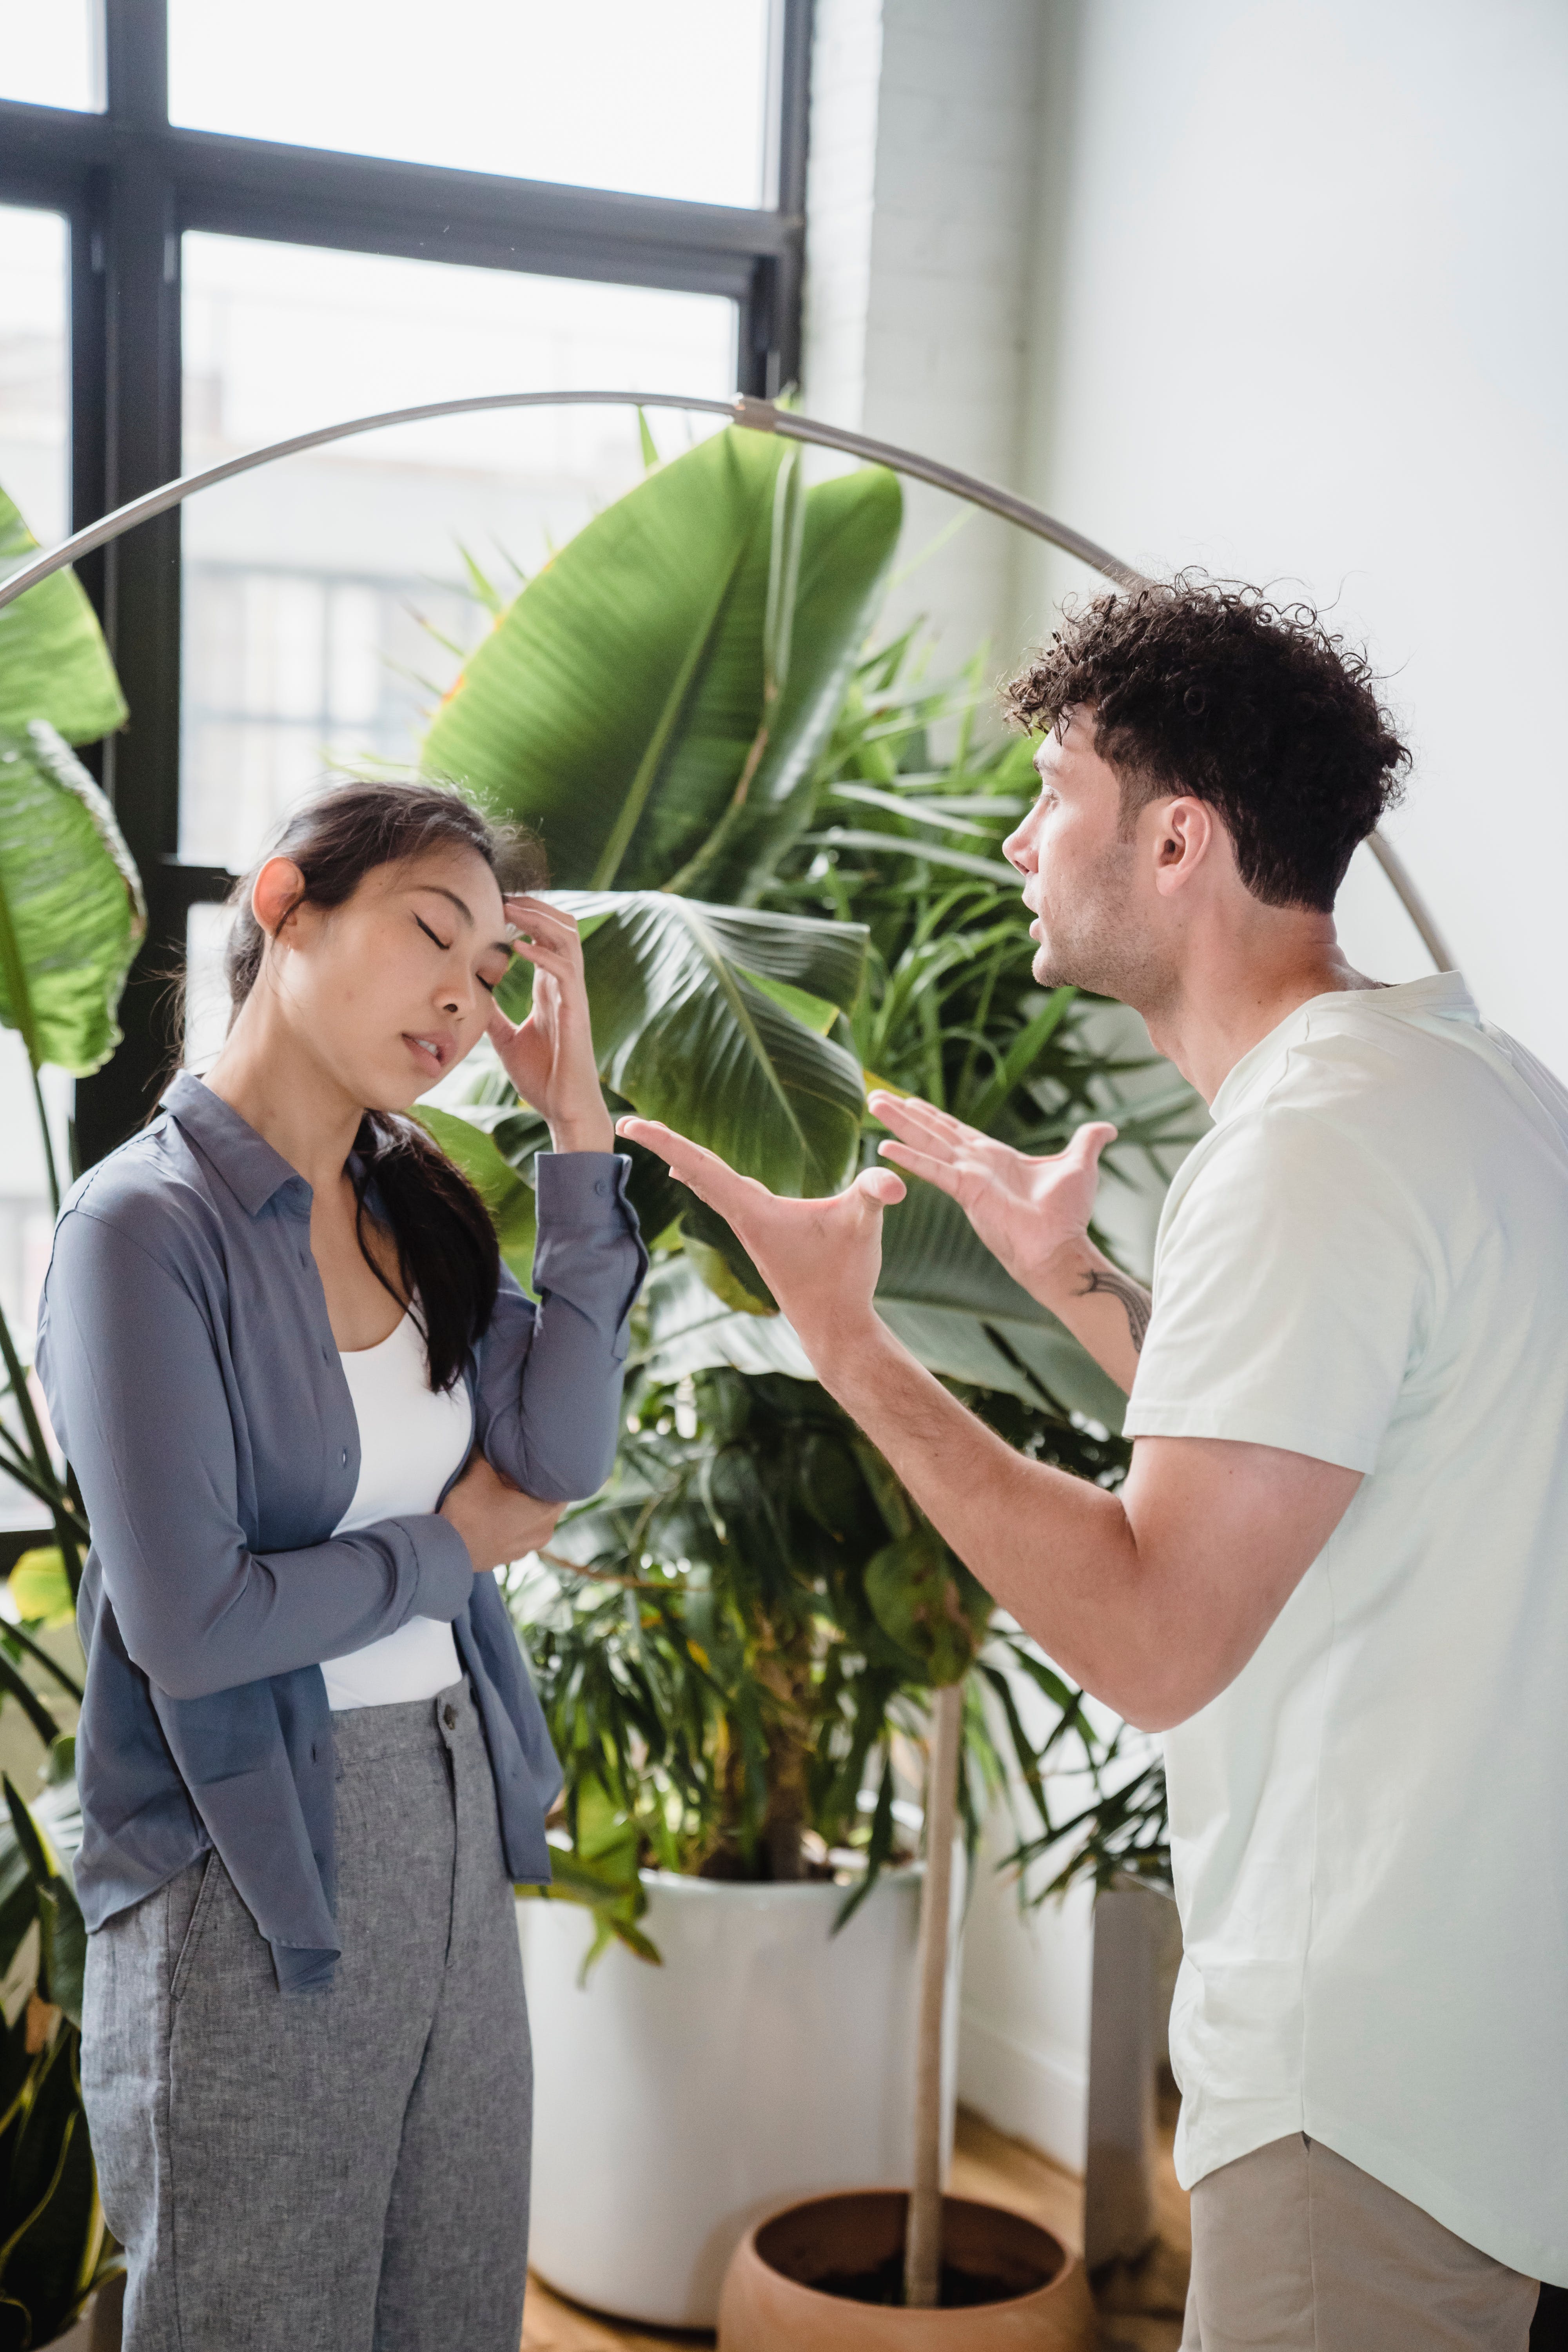 Un homme fait des gestes avec ses deux mains tandis qu'une femme a les yeux fermés et la main sur la tempe lors d'une conversation | Source : Pexels